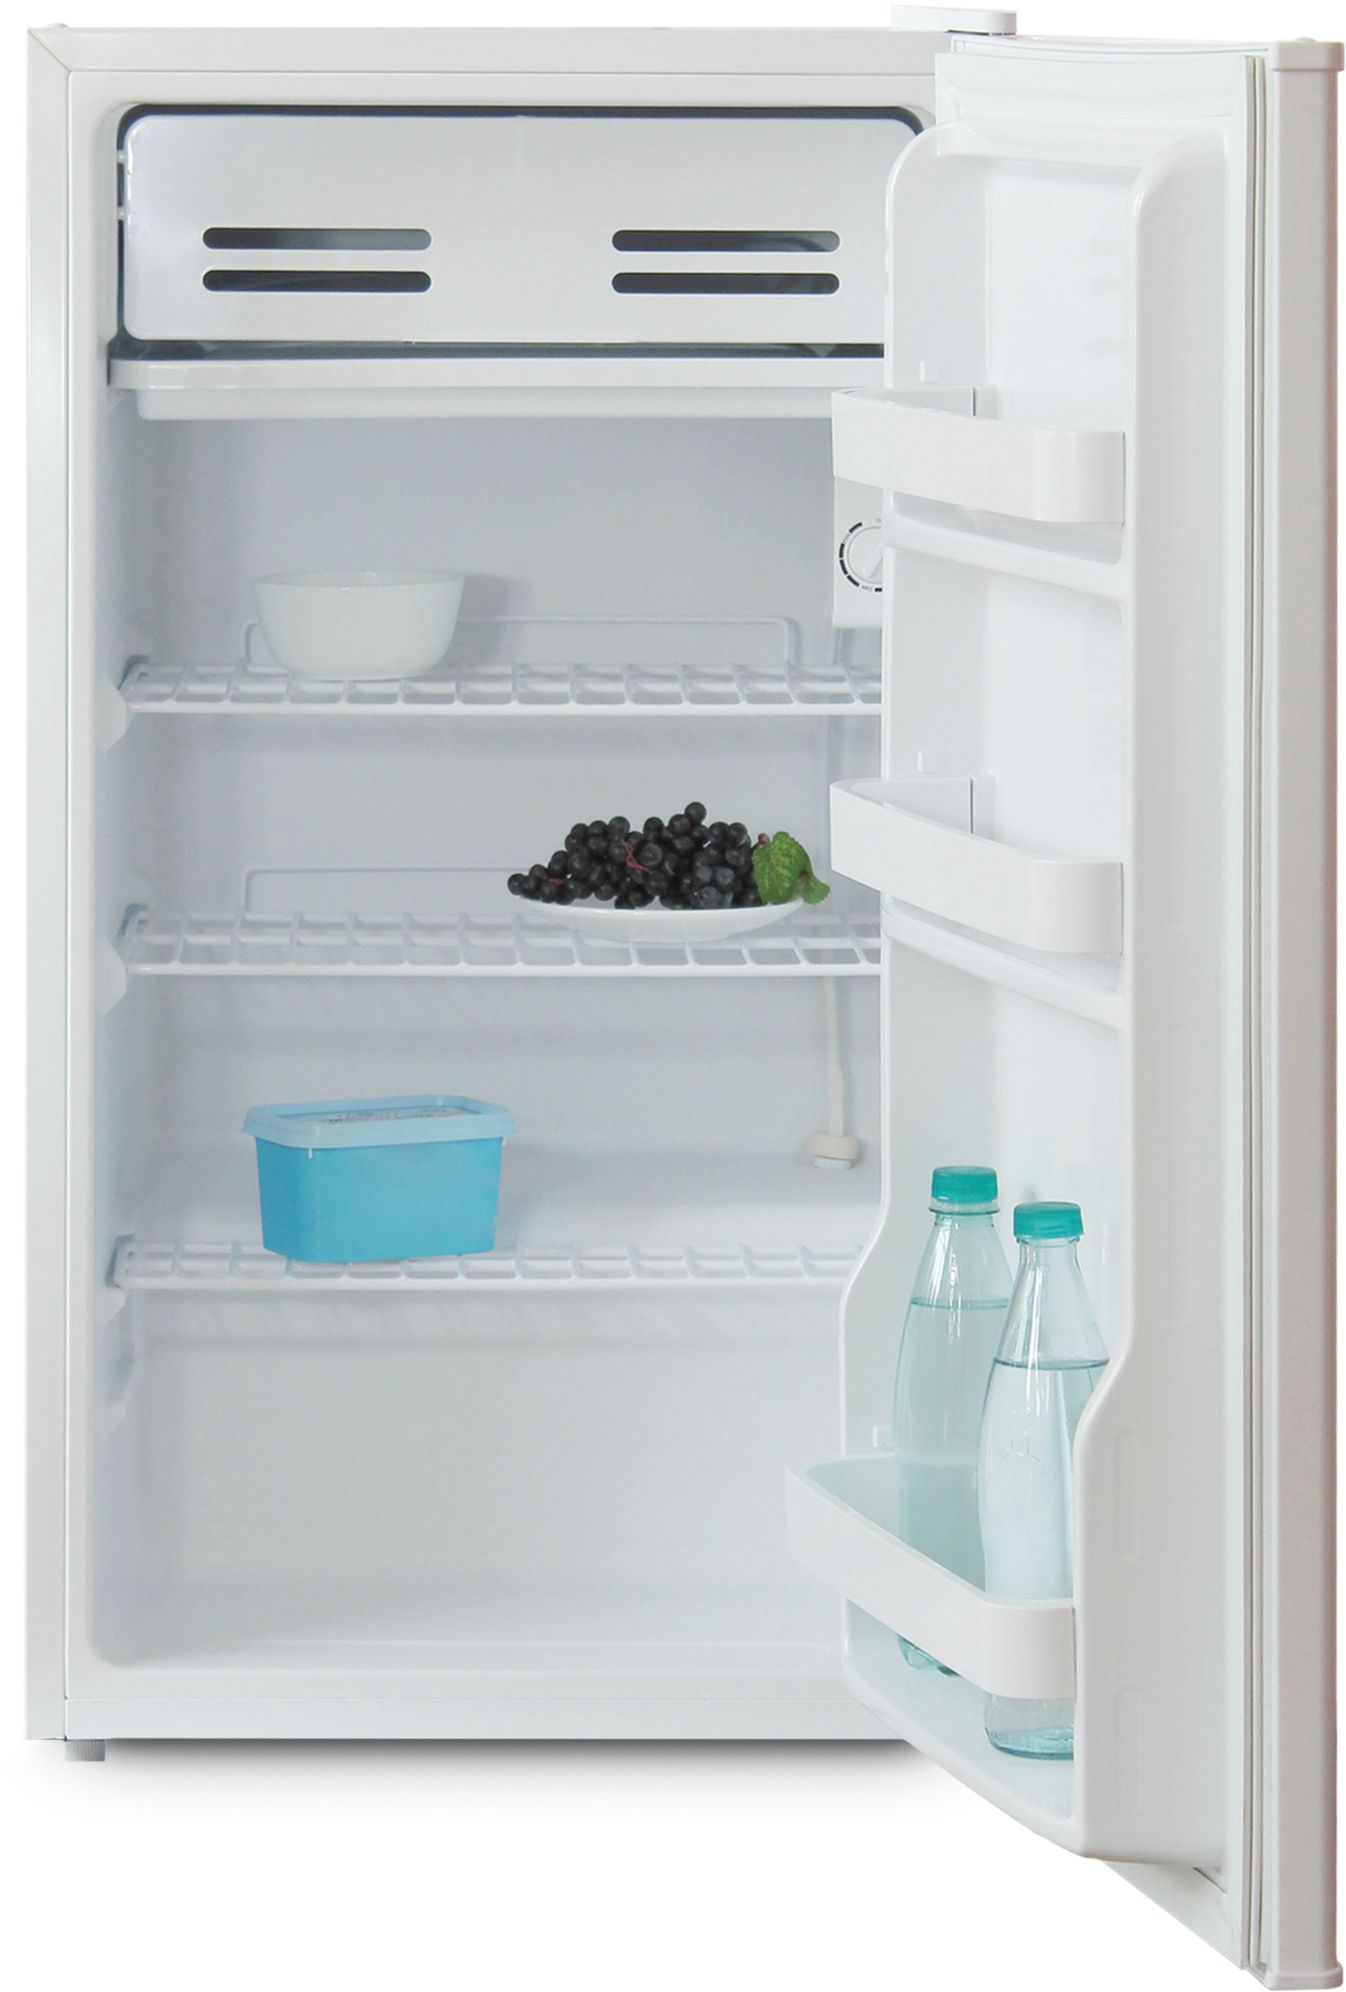 холодильник бирюса 90, купить в Красноярске холодильник бирюса 90,  купить в Красноярске дешево холодильник бирюса 90, купить в Красноярске минимальной цене холодильник бирюса 90